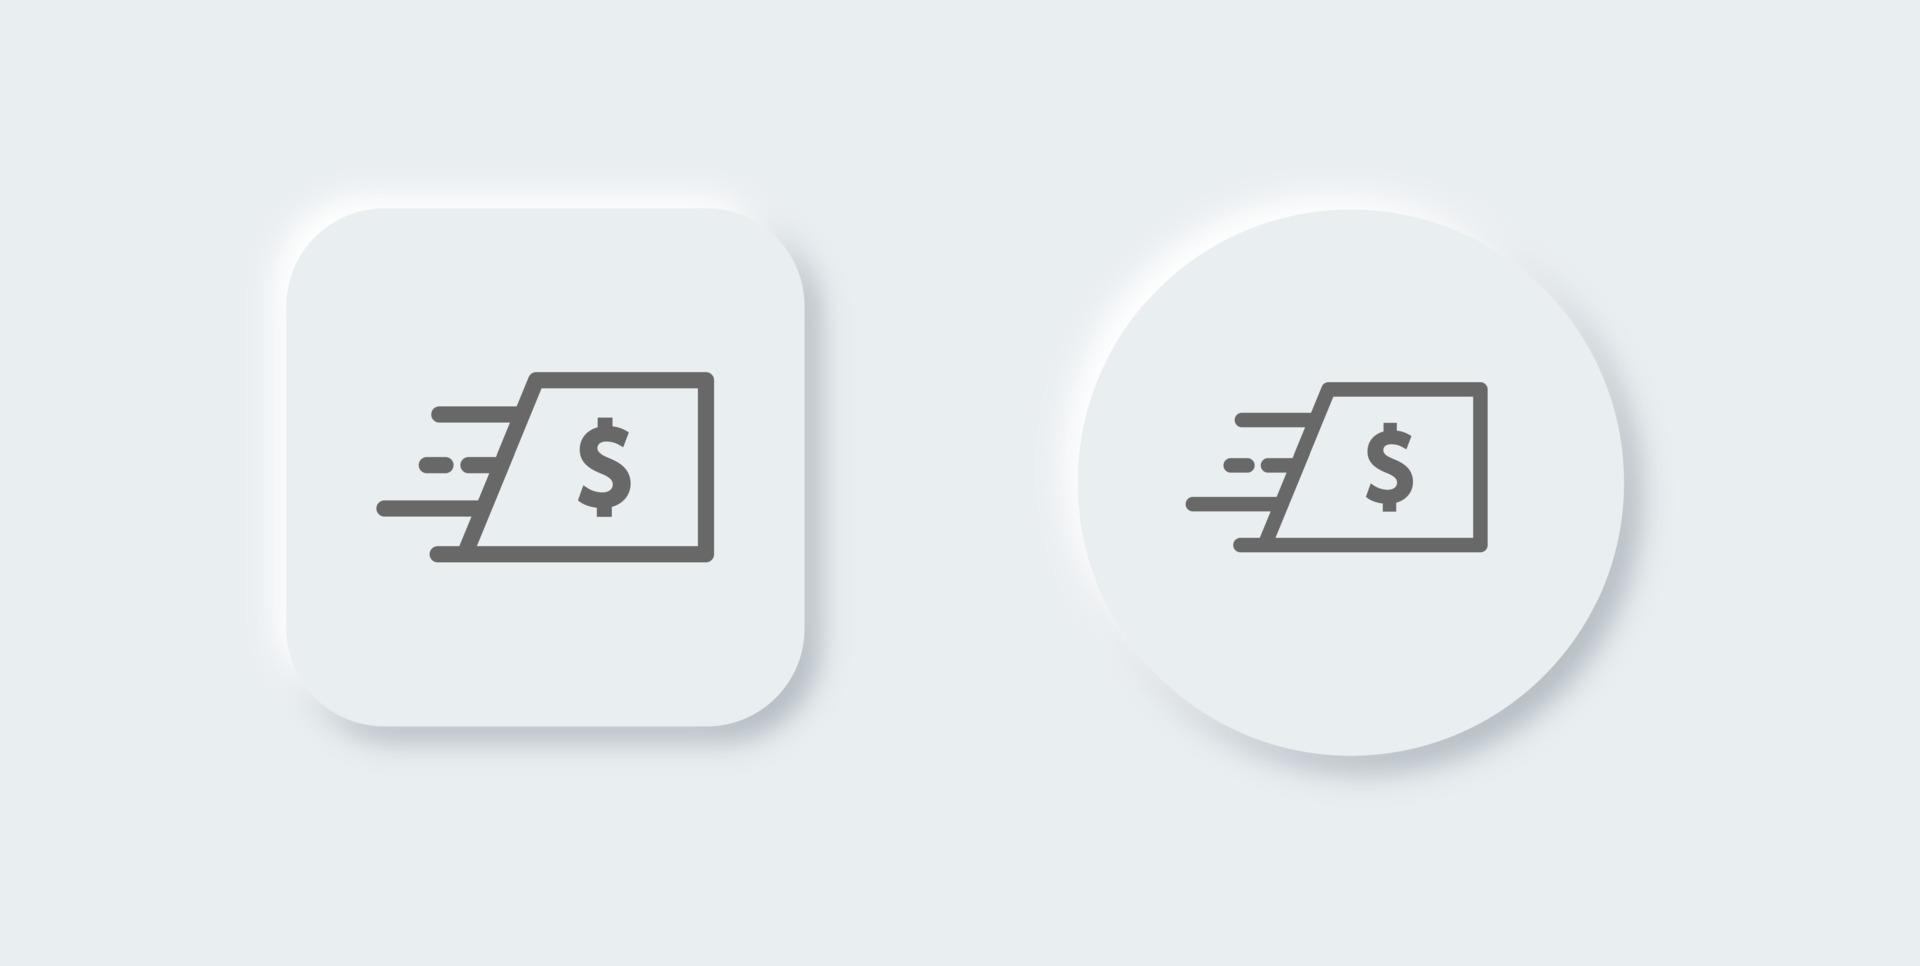 enviar icono de línea de dinero en estilo de diseño neomórfico. ilustración de vector de signos de pago.